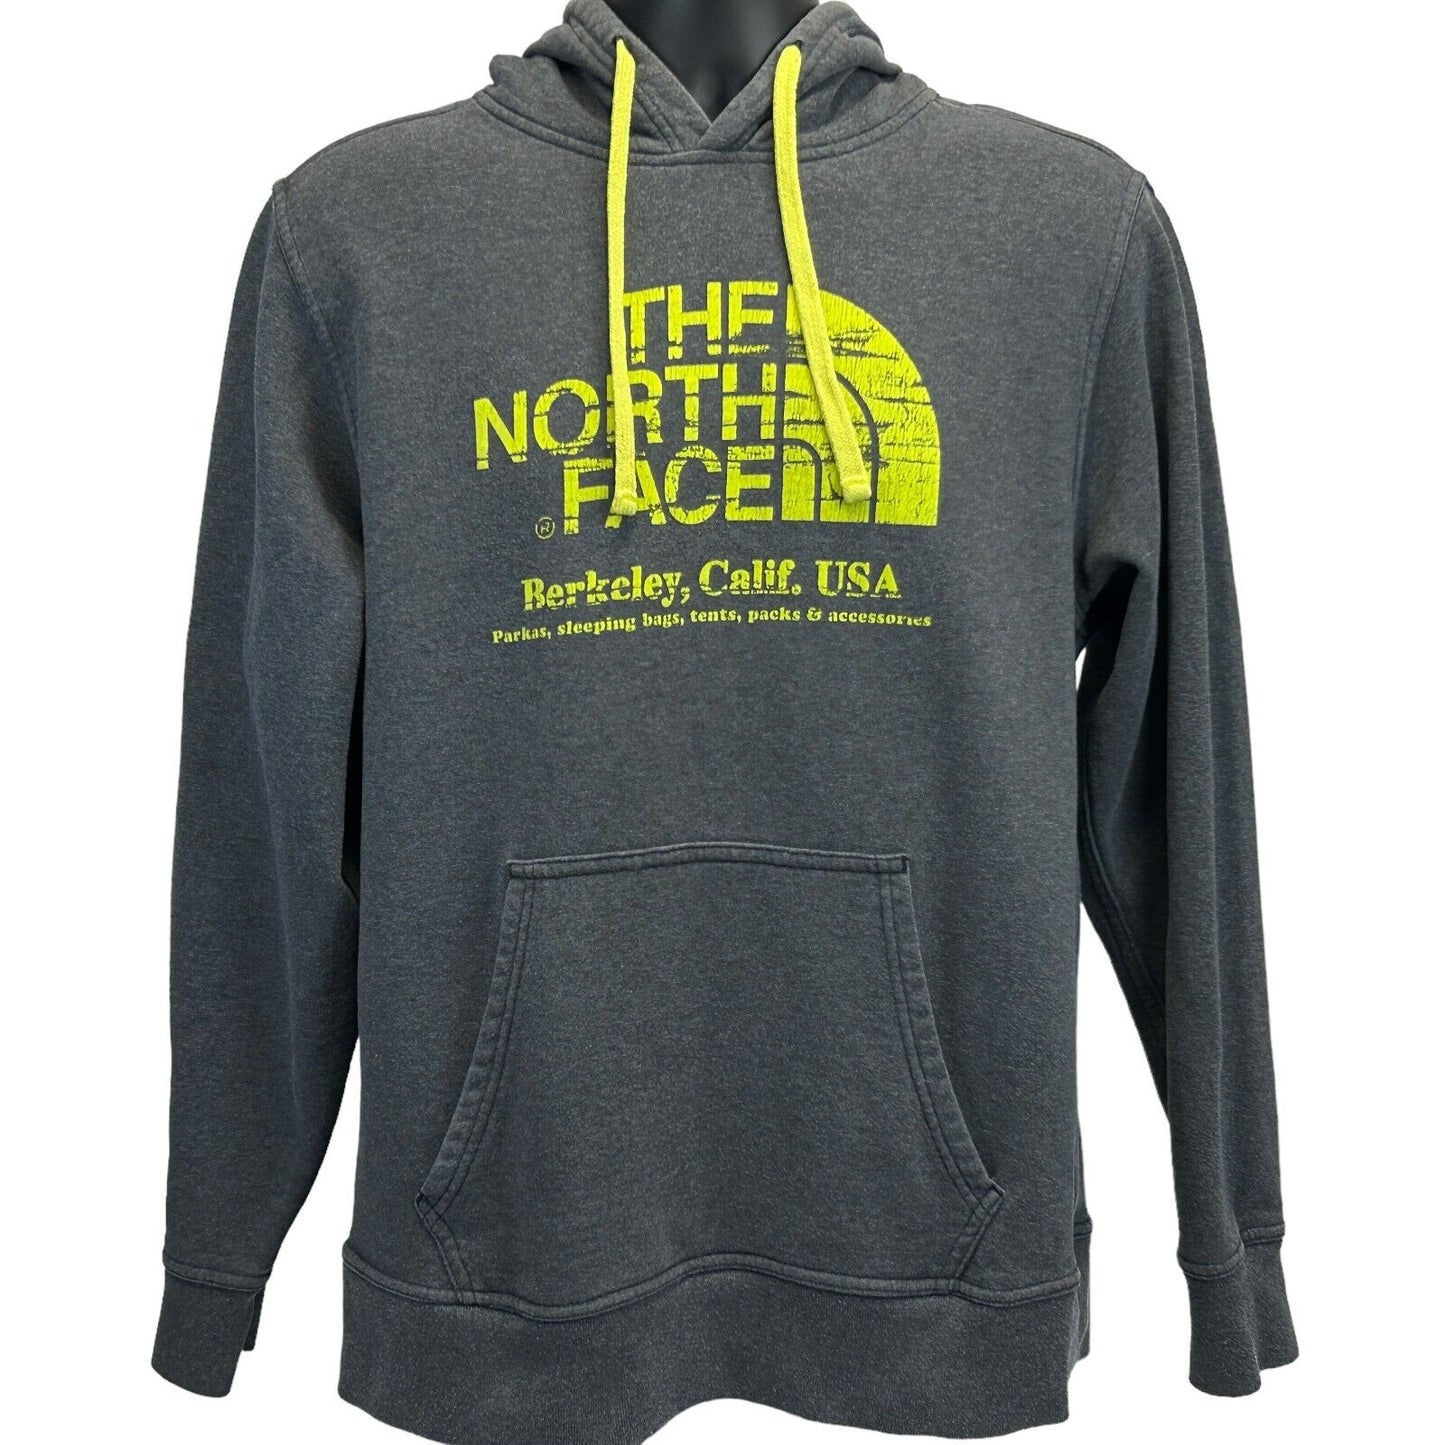 The North Face Berkeley Hoodie Large California Hooded Sweatshirt Mens Gray